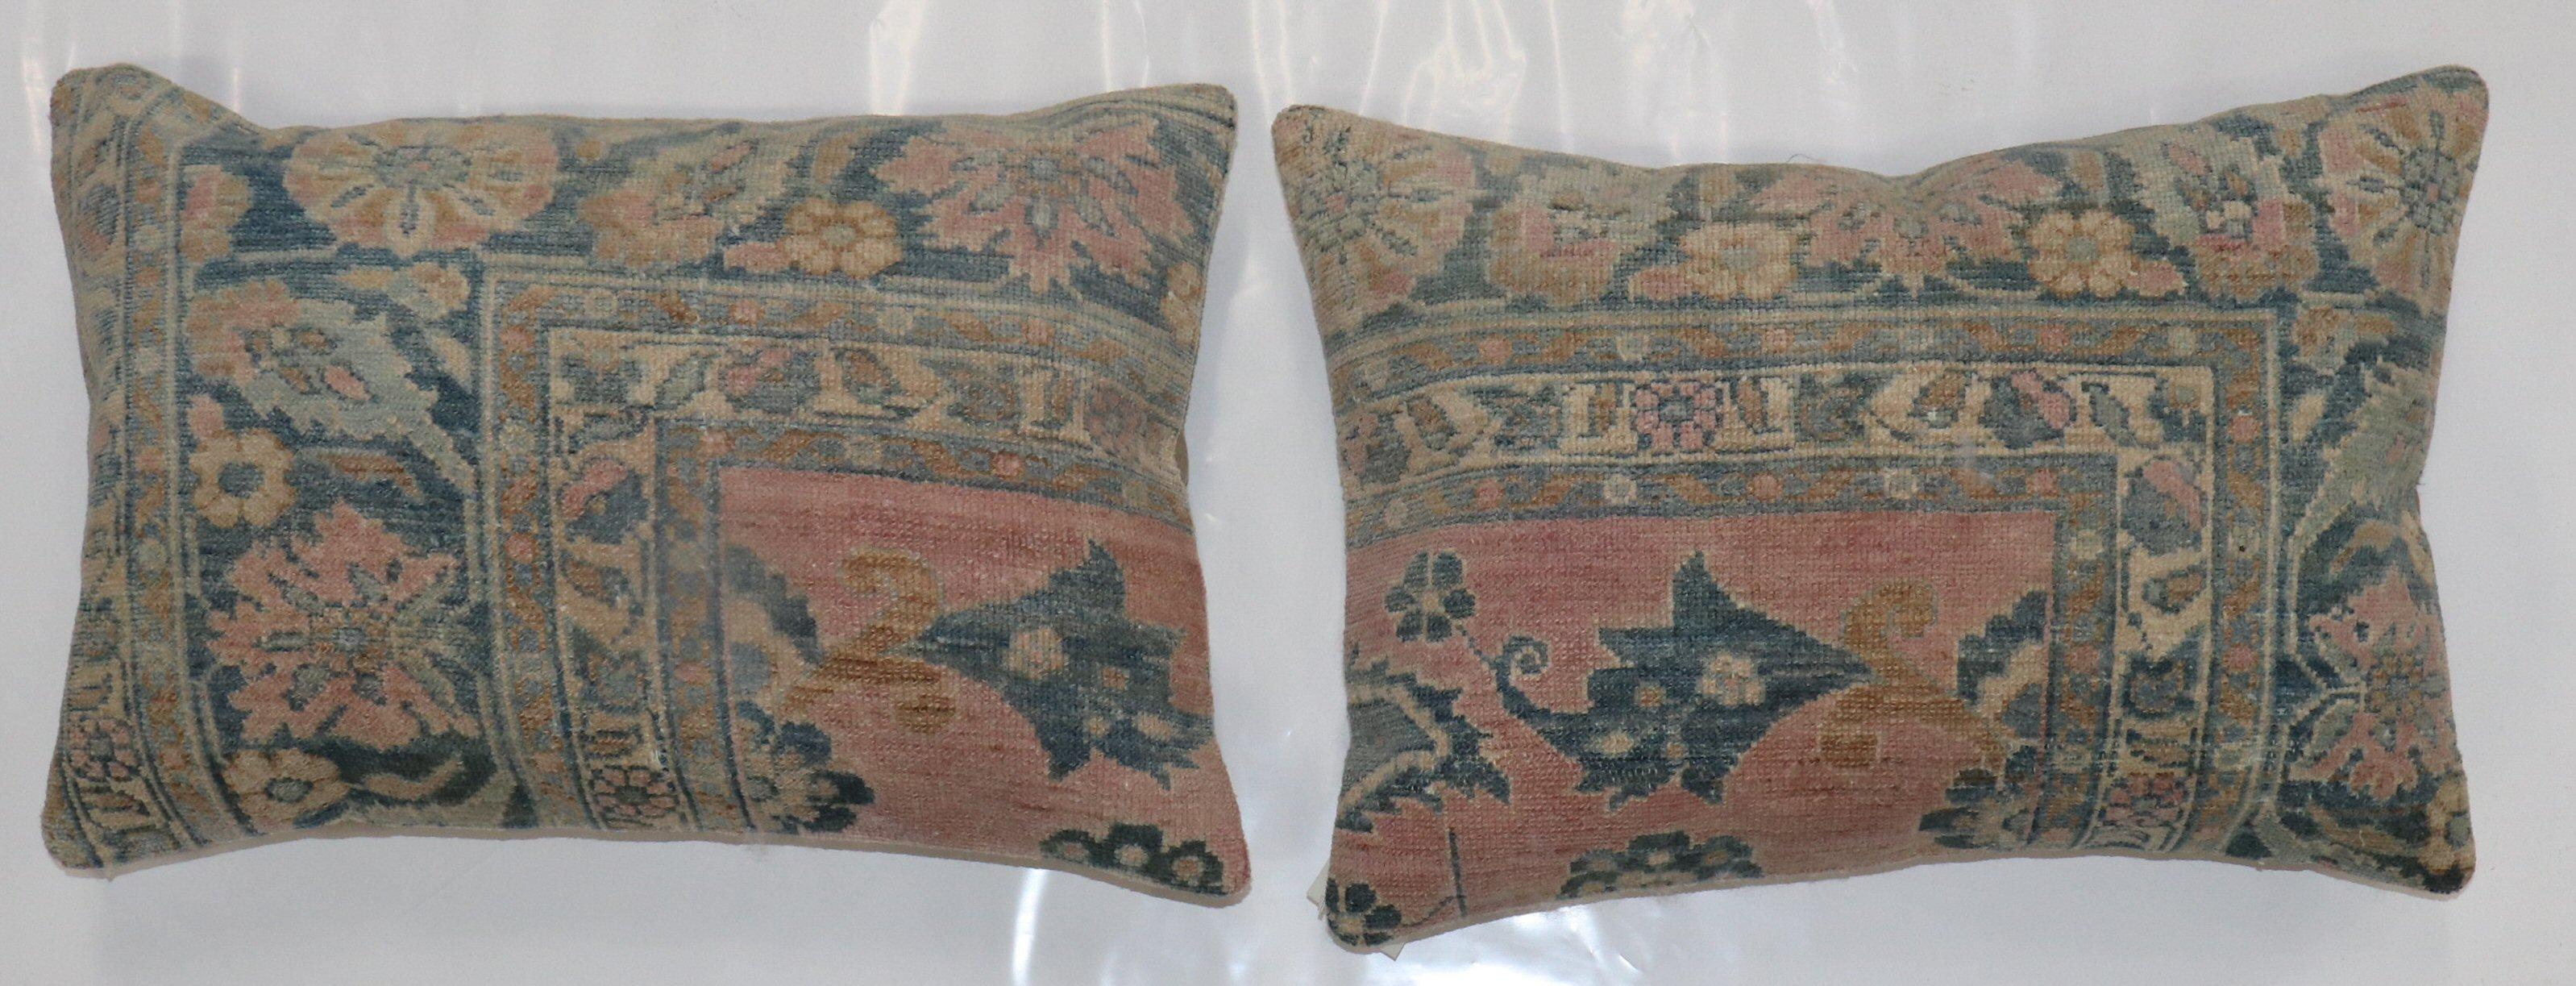 Kissen-Set aus einem persischen Lilihan-Teppich aus dem 20. Jahrhundert. 

Beide messen 16'' x 24''.